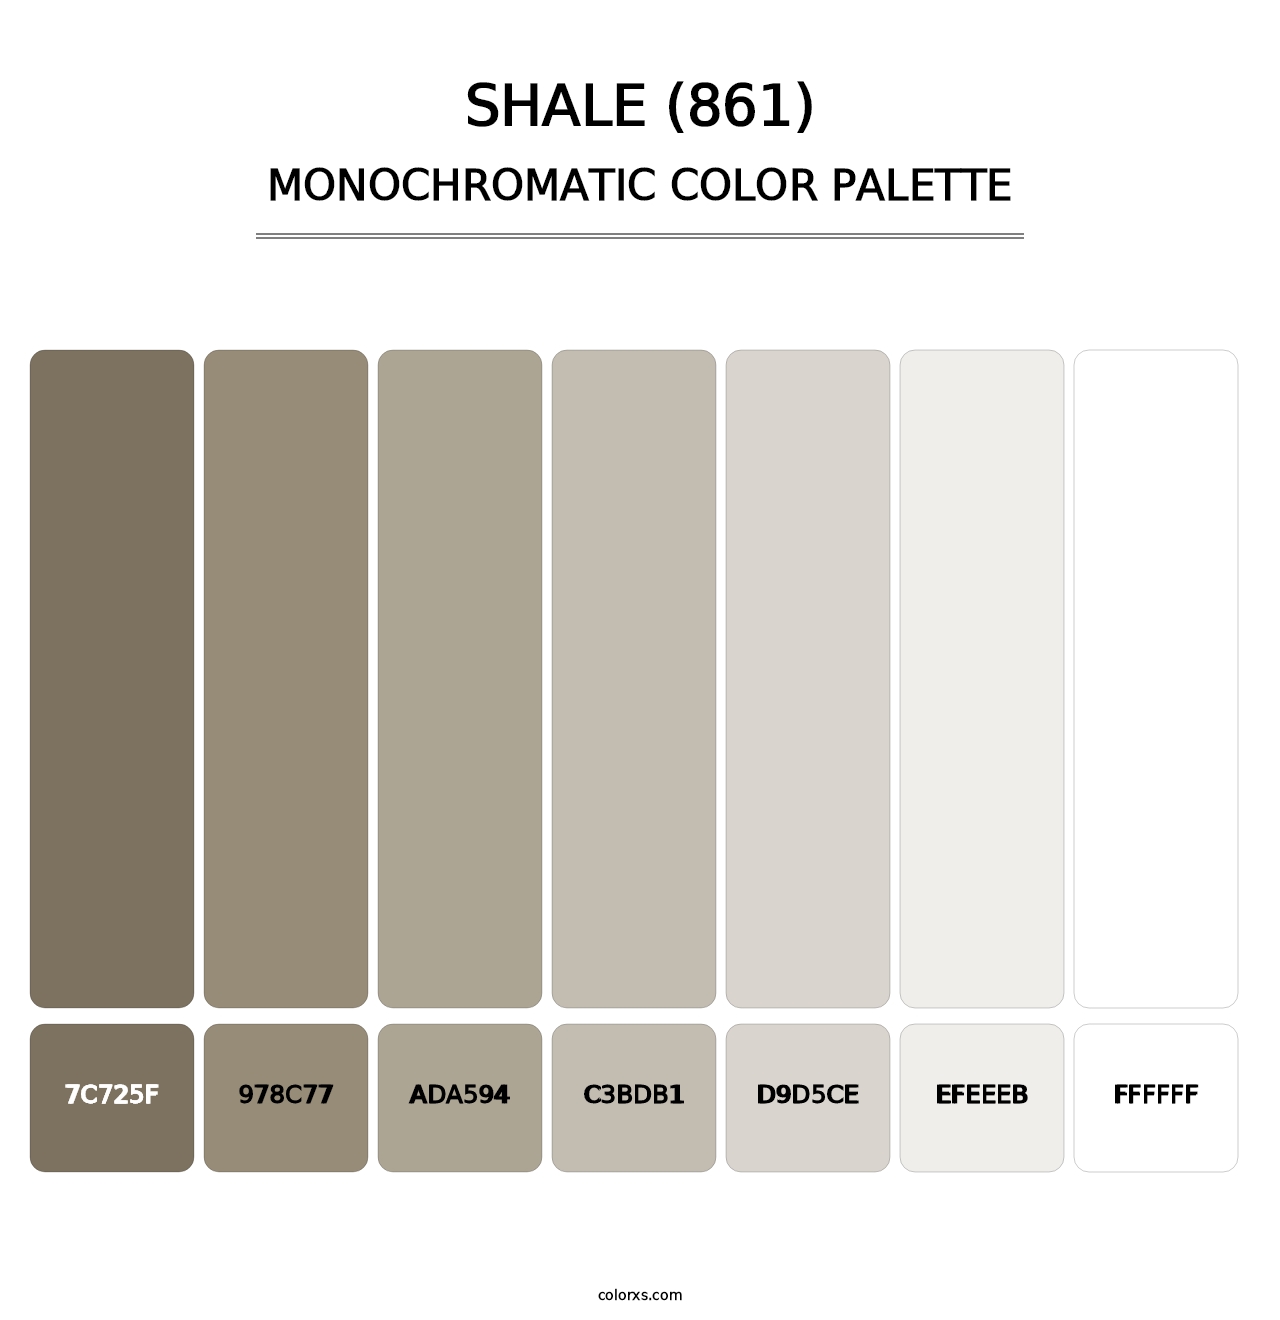 Shale (861) - Monochromatic Color Palette